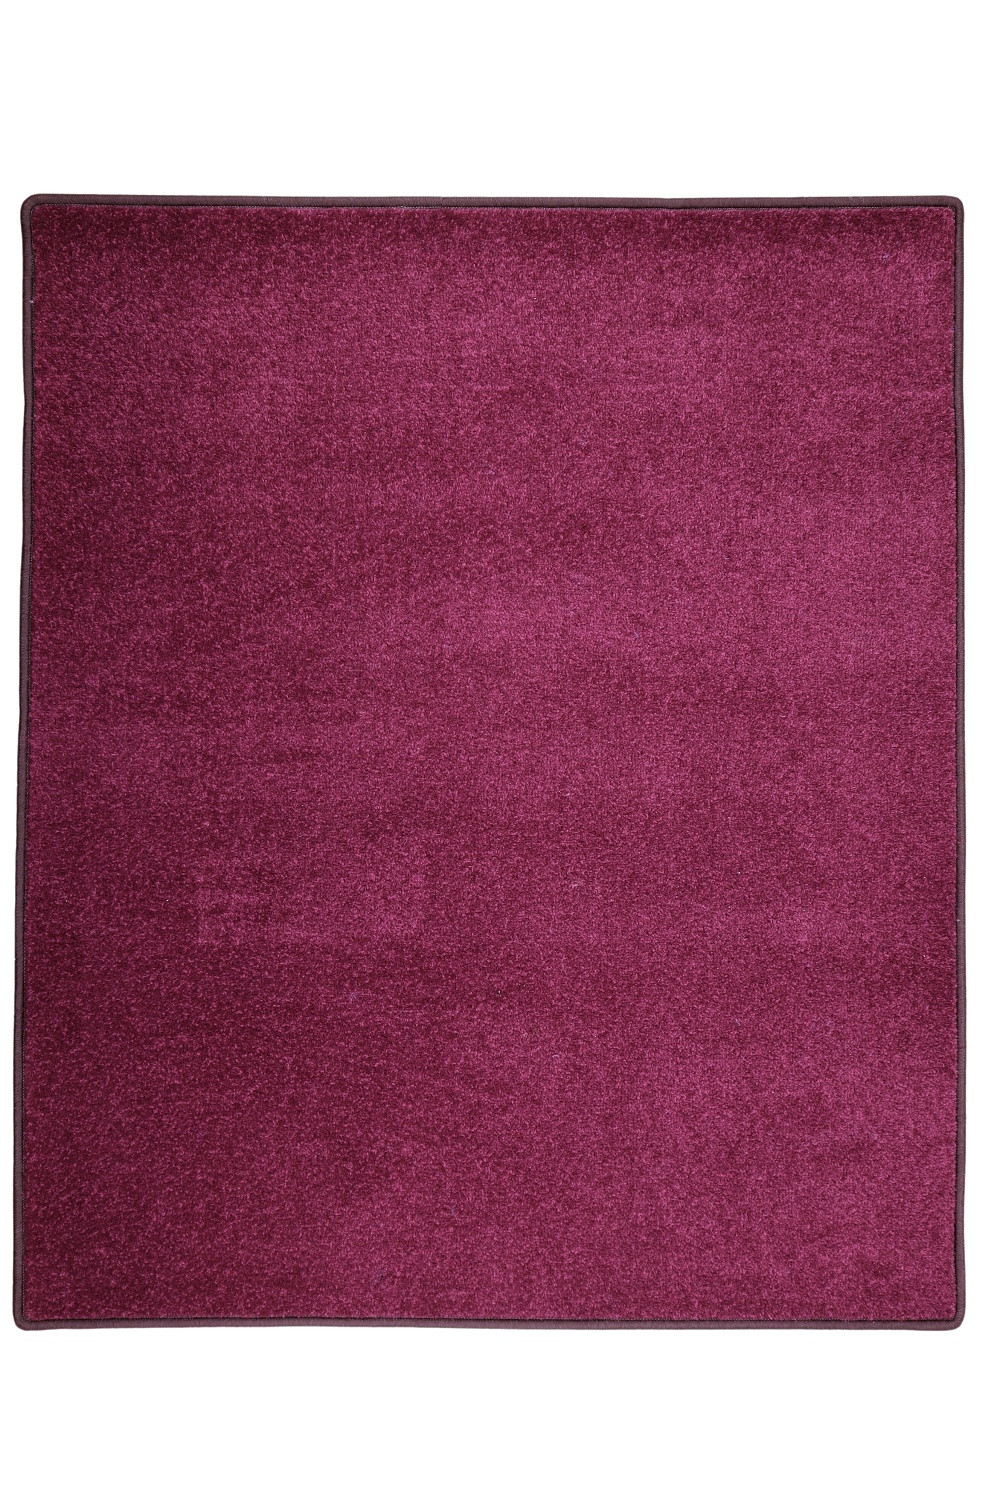 Kusový koberec Eton fialový 48 - 140x200 cm Vopi koberce 